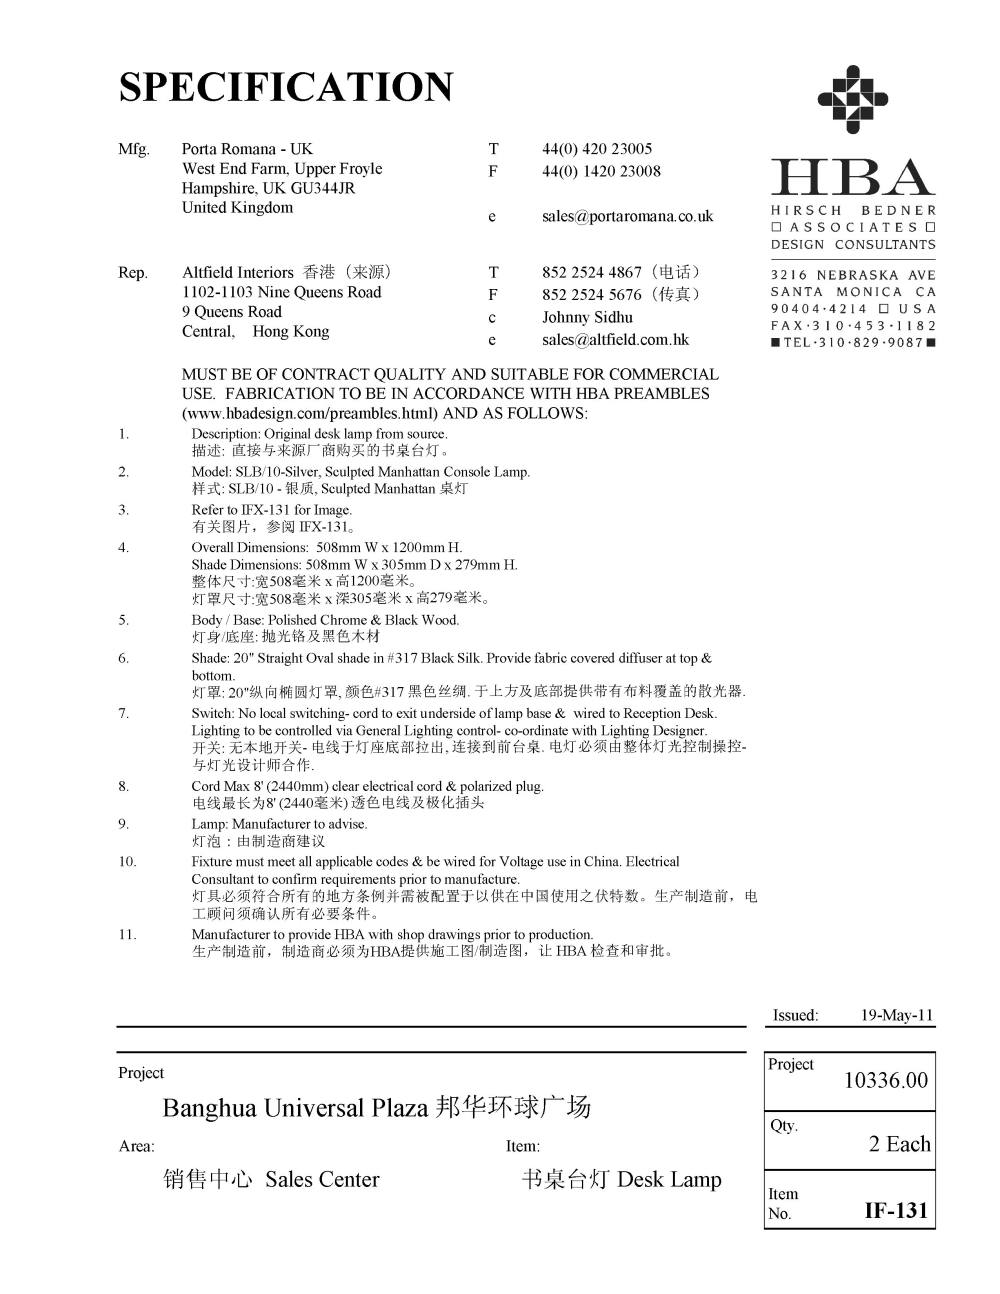 HBA新作——广州邦华环球广场销售中心（资料补充）_家具设计说明书_页面_55.jpg